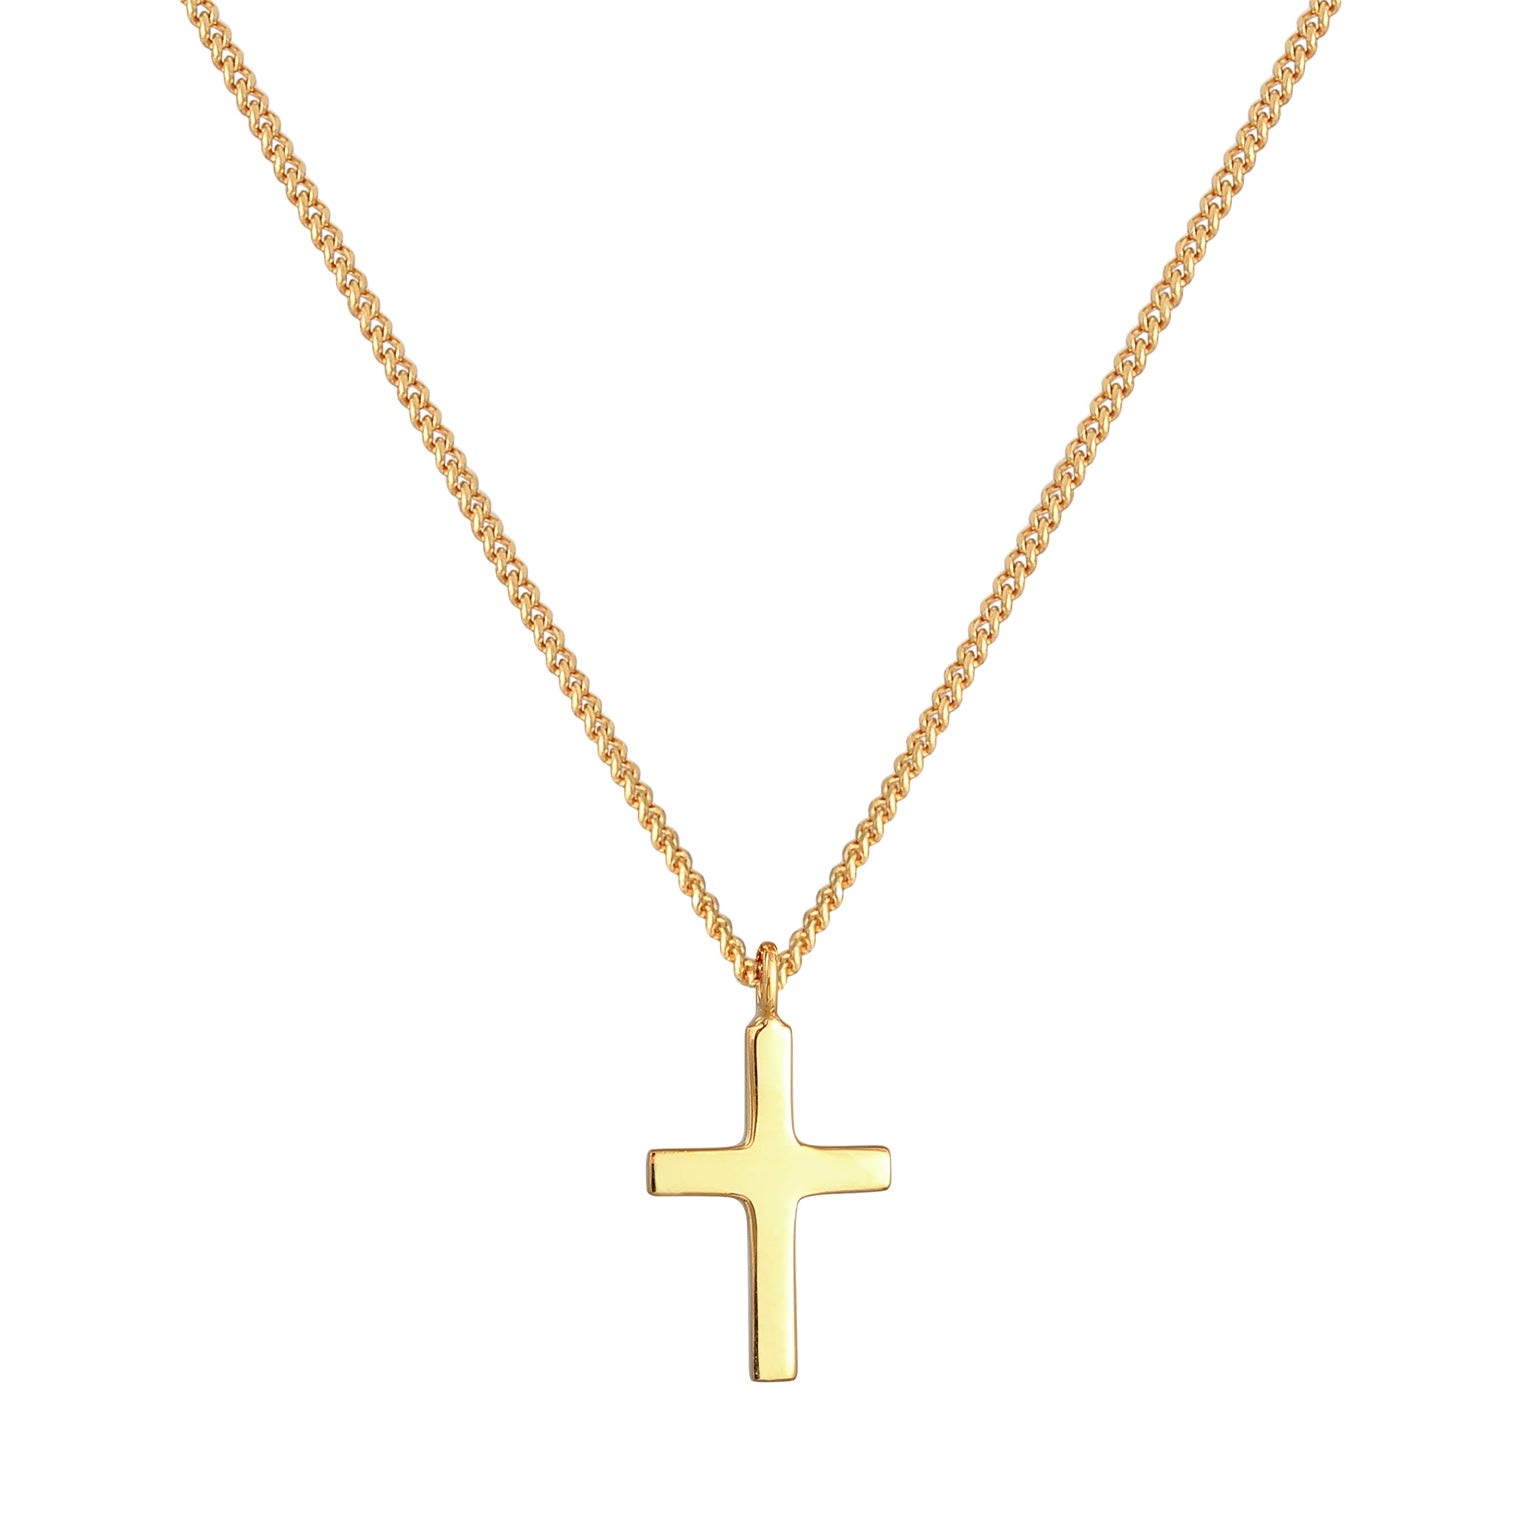 Kreuz Klassisch Glaube Kommunion 375 Gelbgold – Elli Jewelry